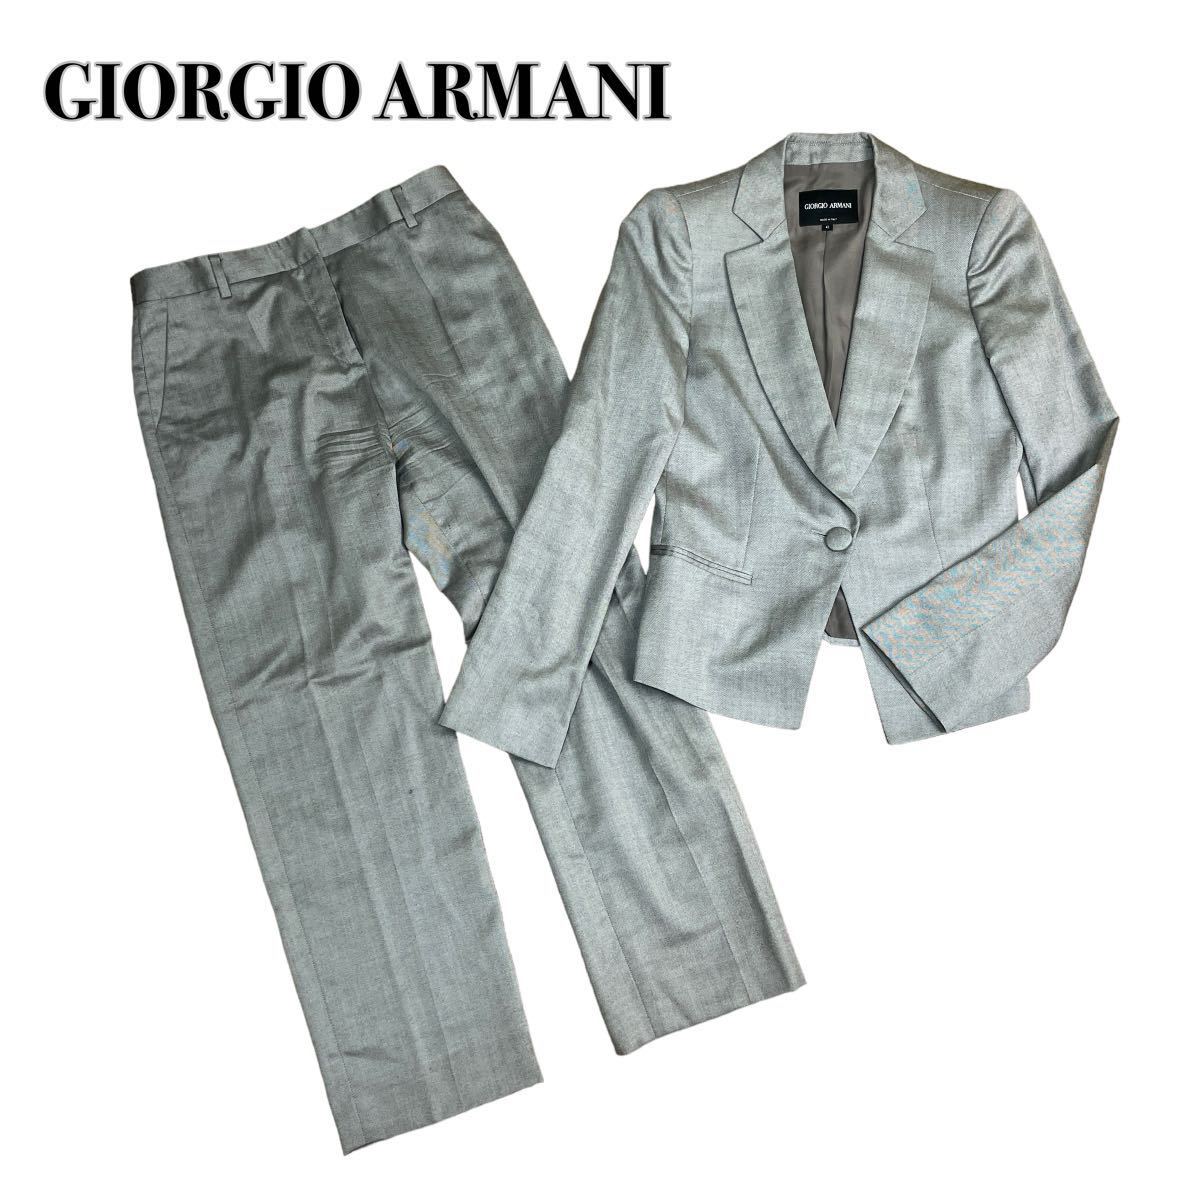 激安店舗 GIORGIO ARMANI ジョルジオアルマーニ セットアップ パンツ